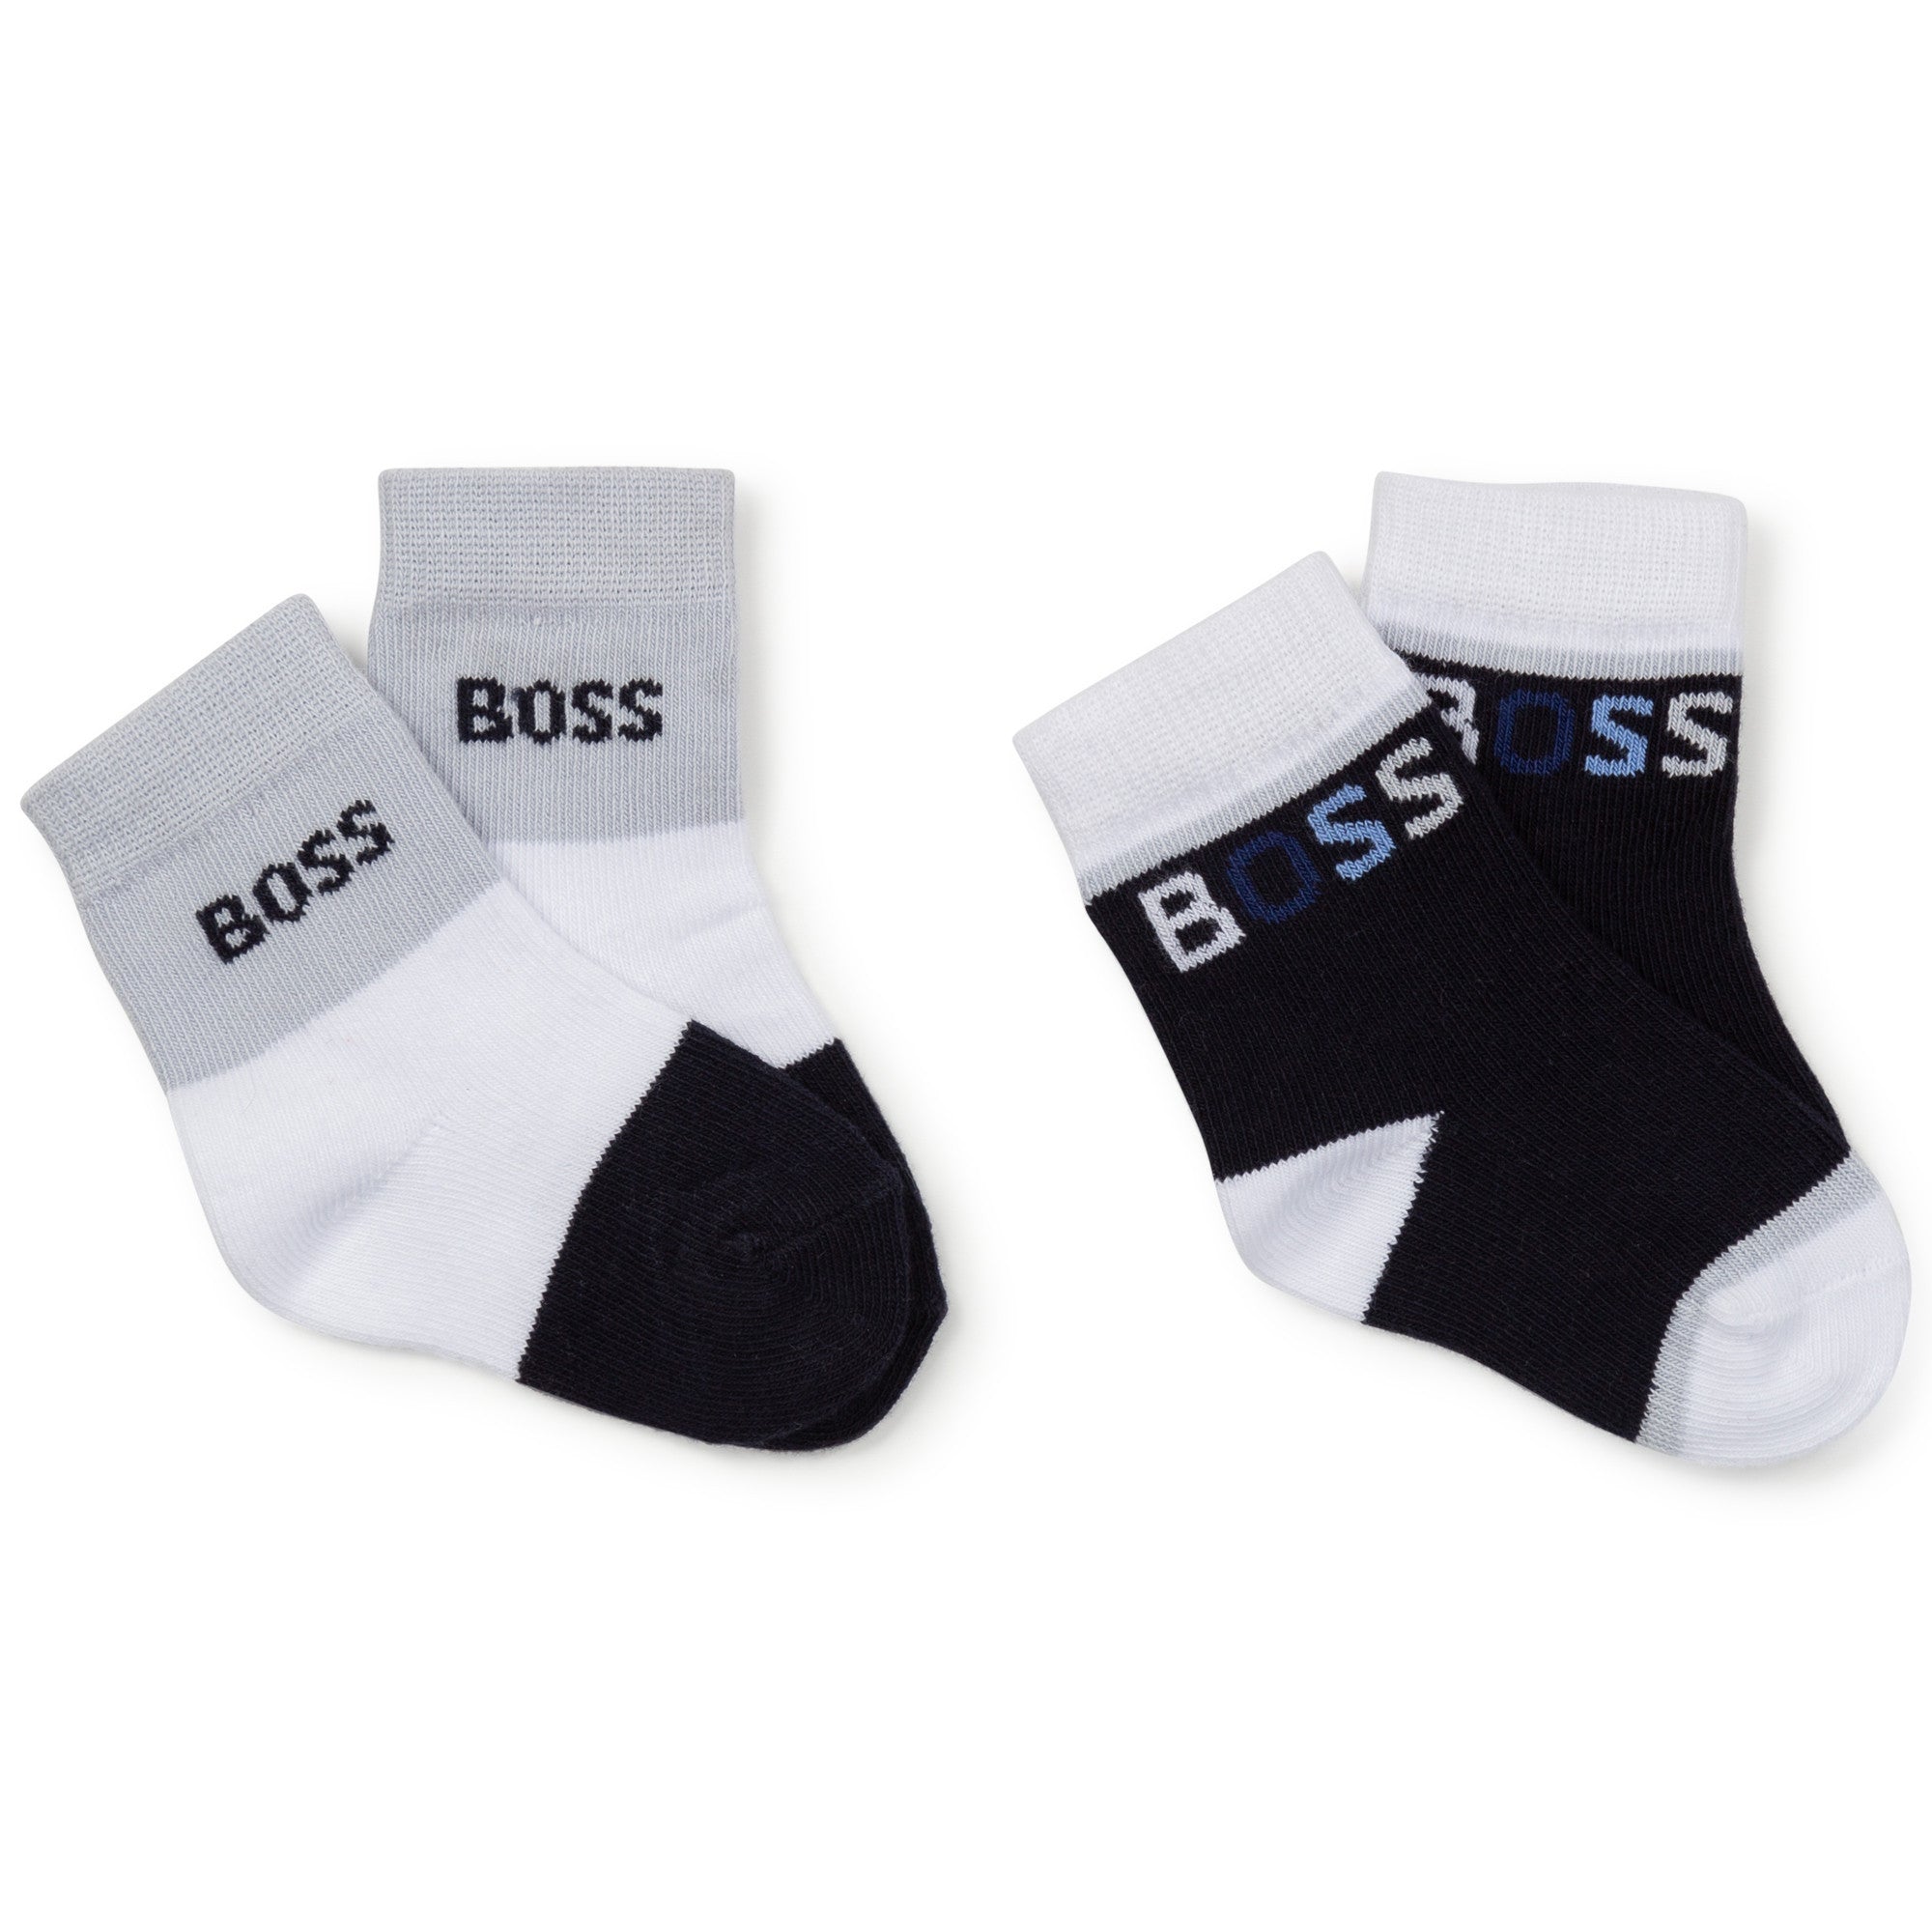 Hugo Boss Baby Socks